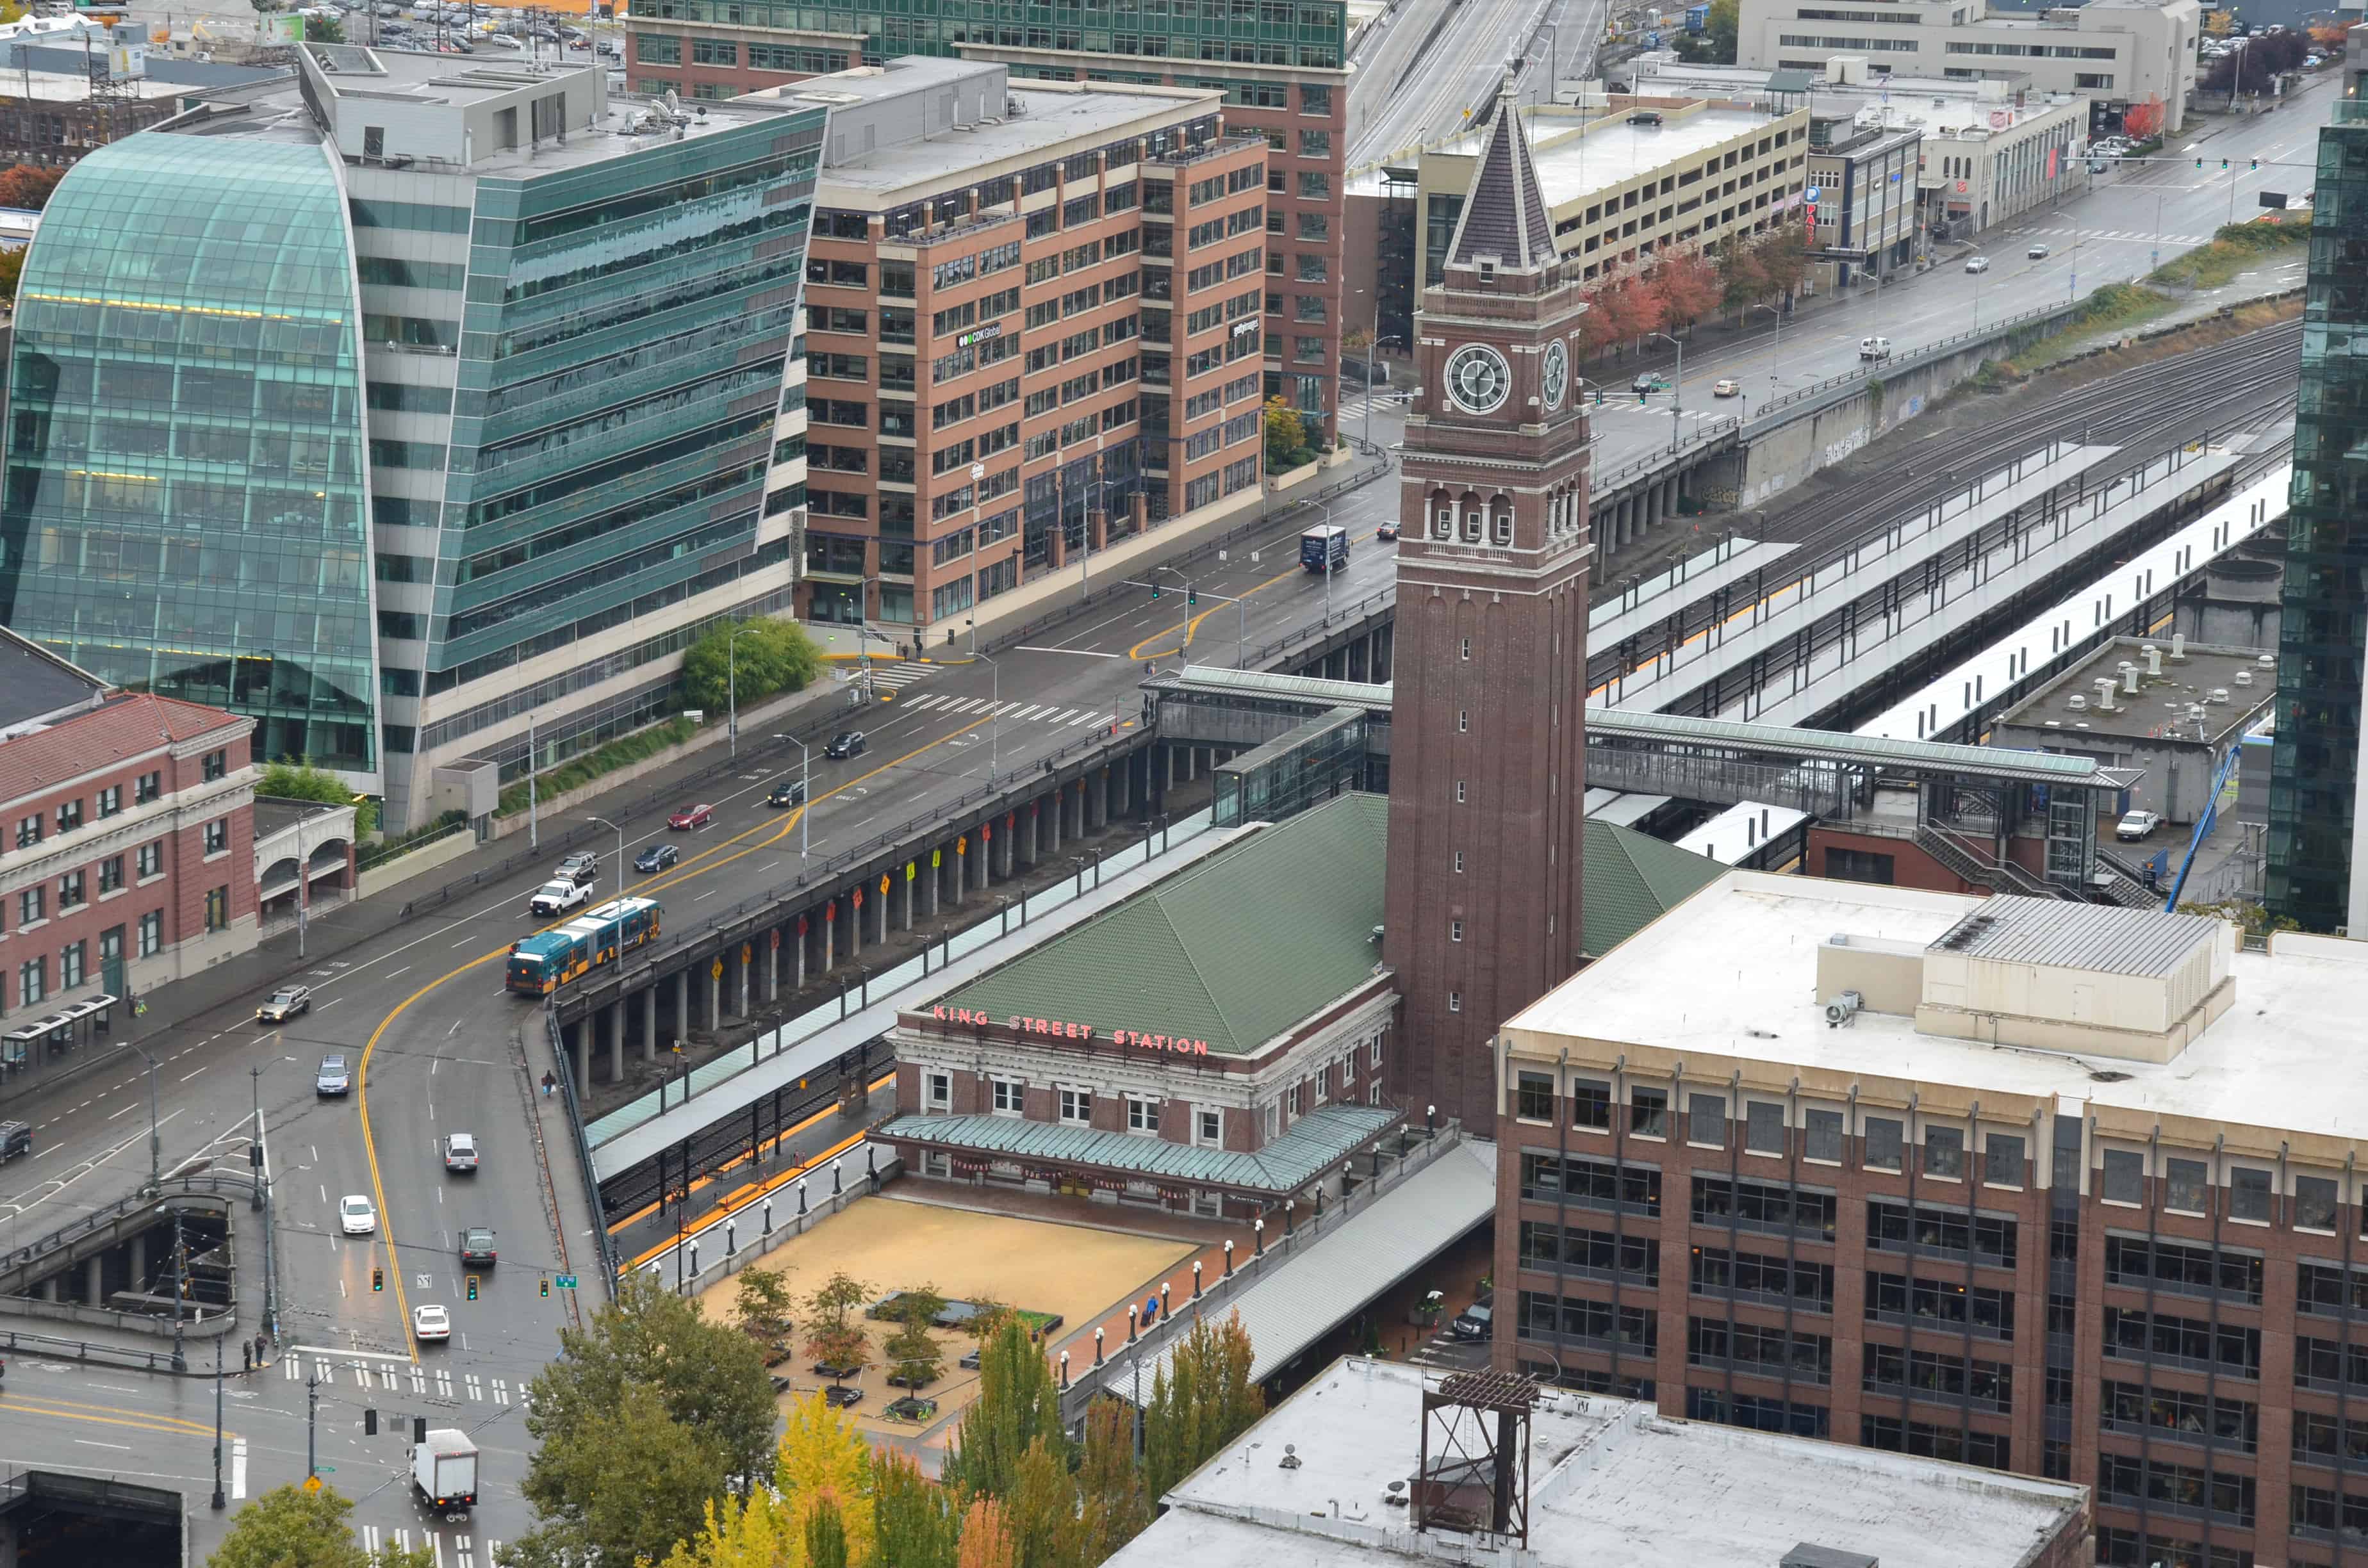 King Street Station in Seattle, Washington